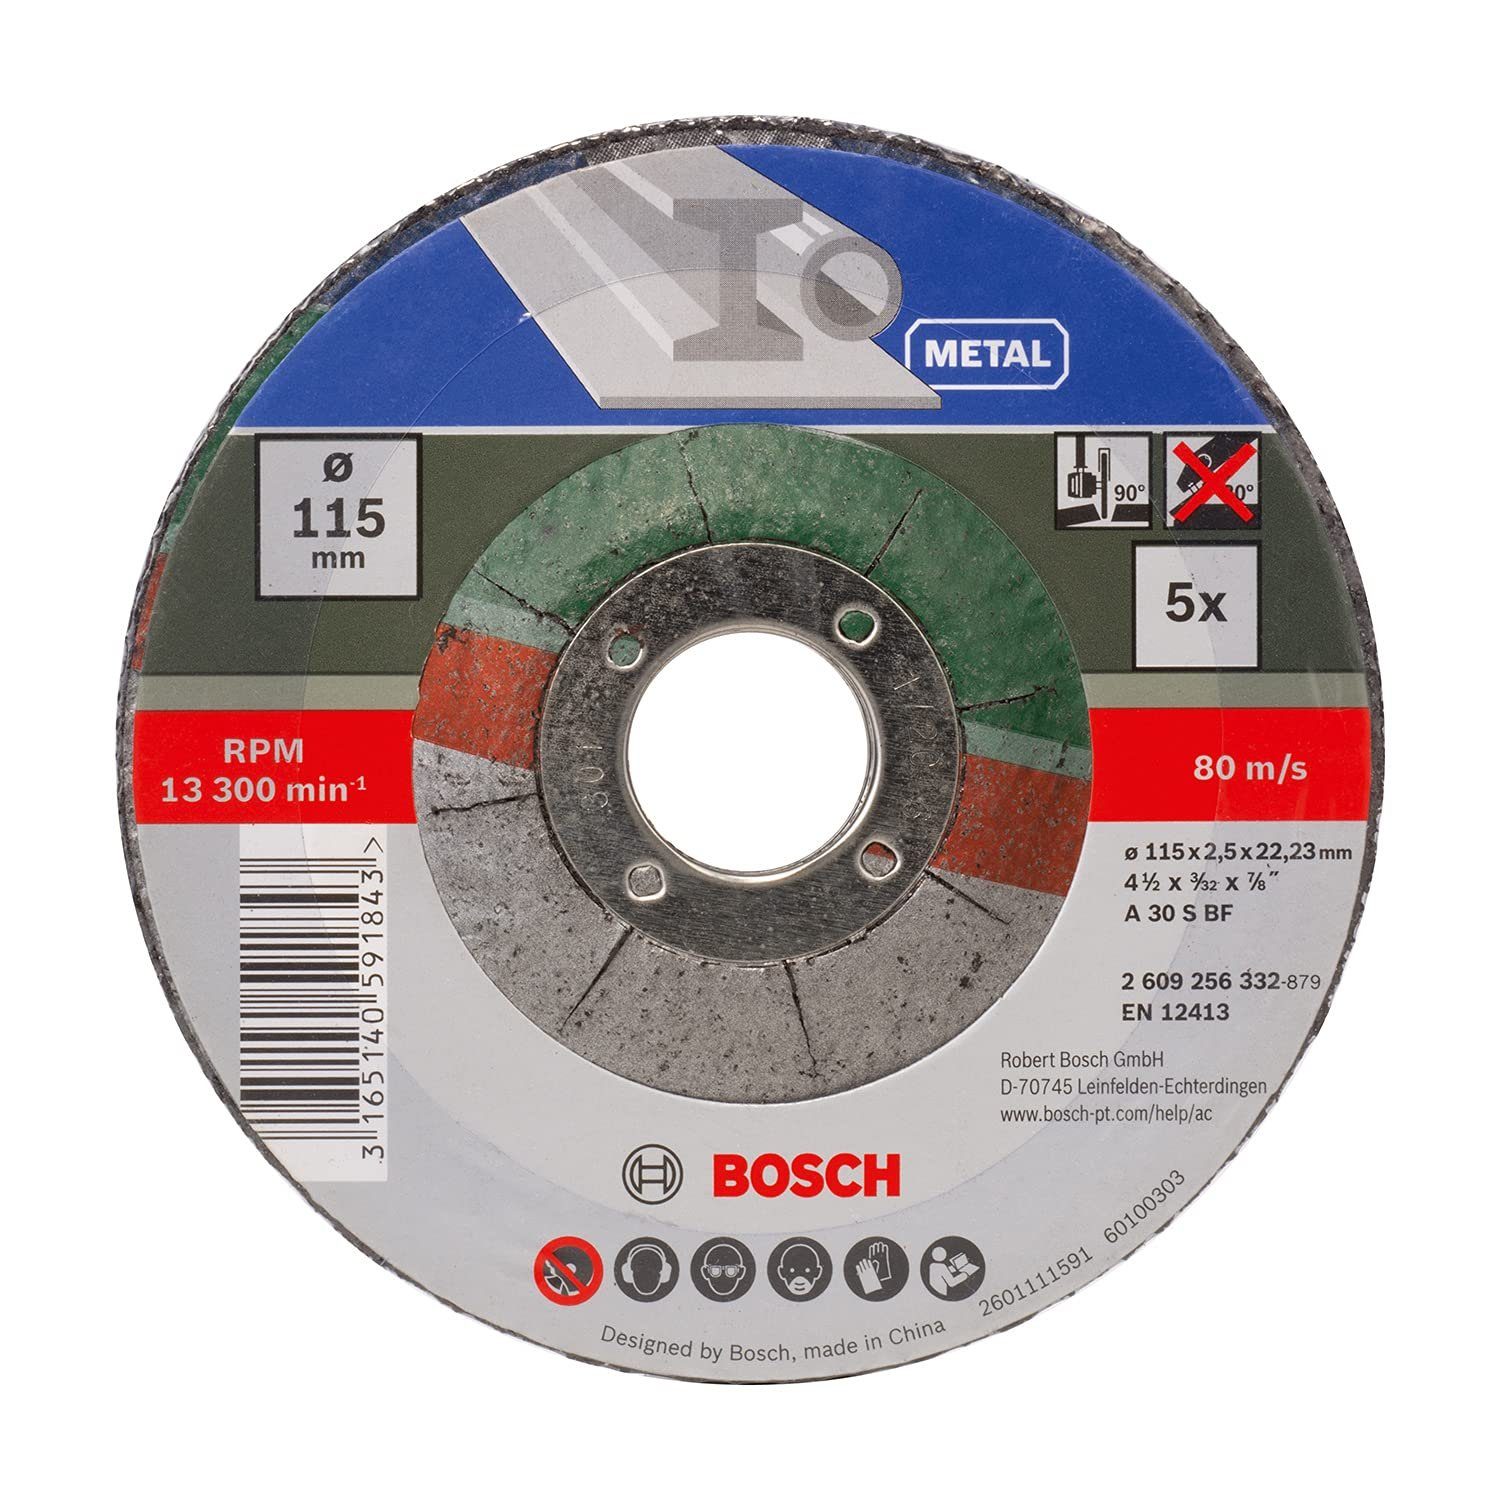 2,5 5 BF mm Trennscheibe x BOSCH mm S Metal 30 for gekröpft Bohrfutter 115 A Bosch